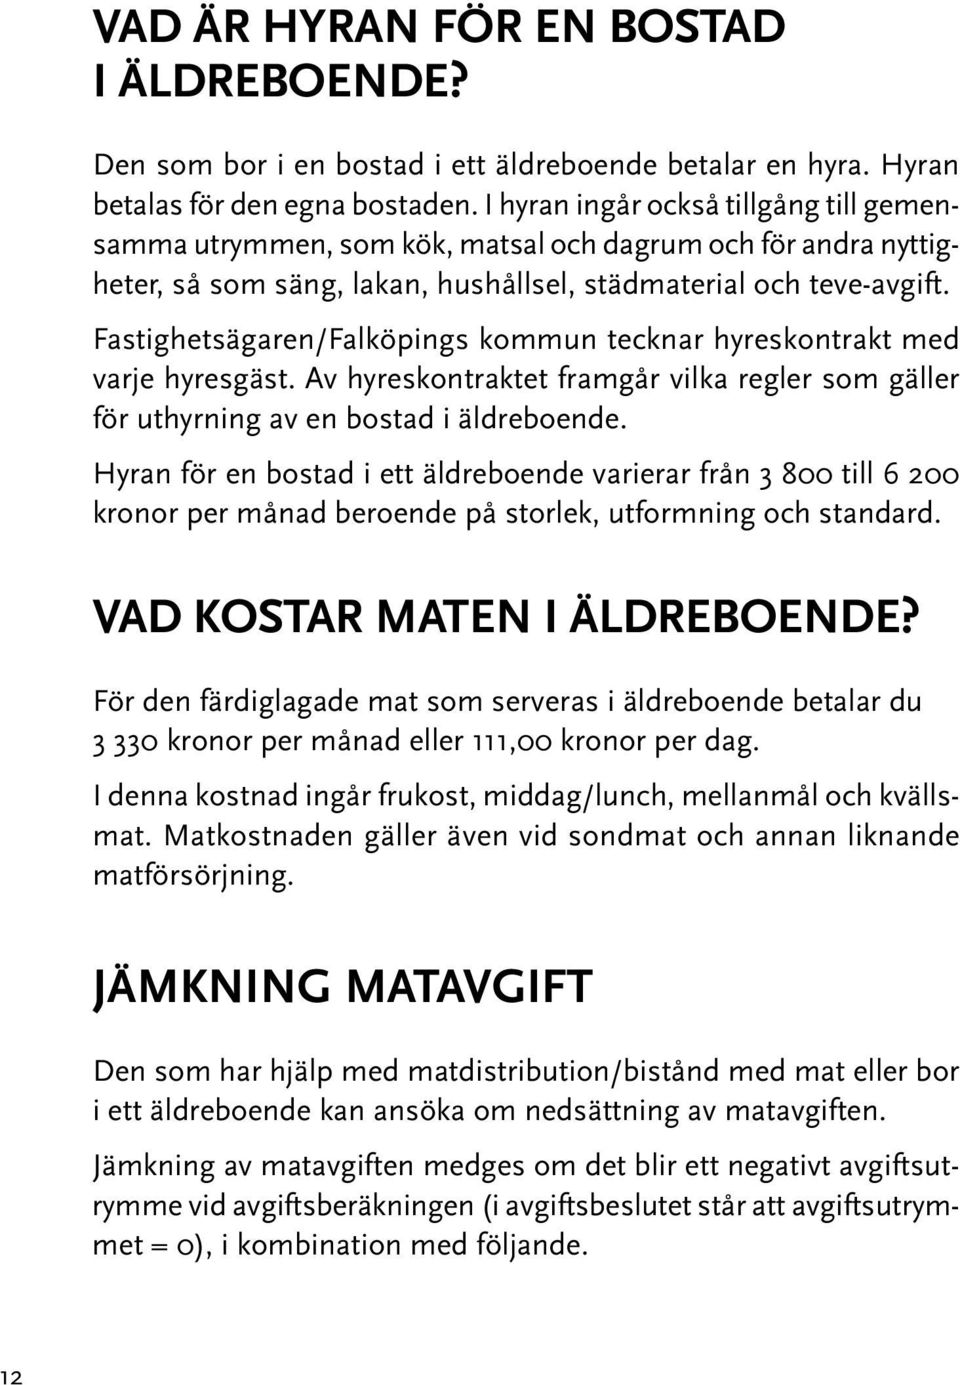 Fastighetsägaren/Falköpings kommun tecknar hyreskontrakt med varje hyresgäst. Av hyreskontraktet framgår vilka regler som gäller för uthyrning av en bostad i äldreboende.